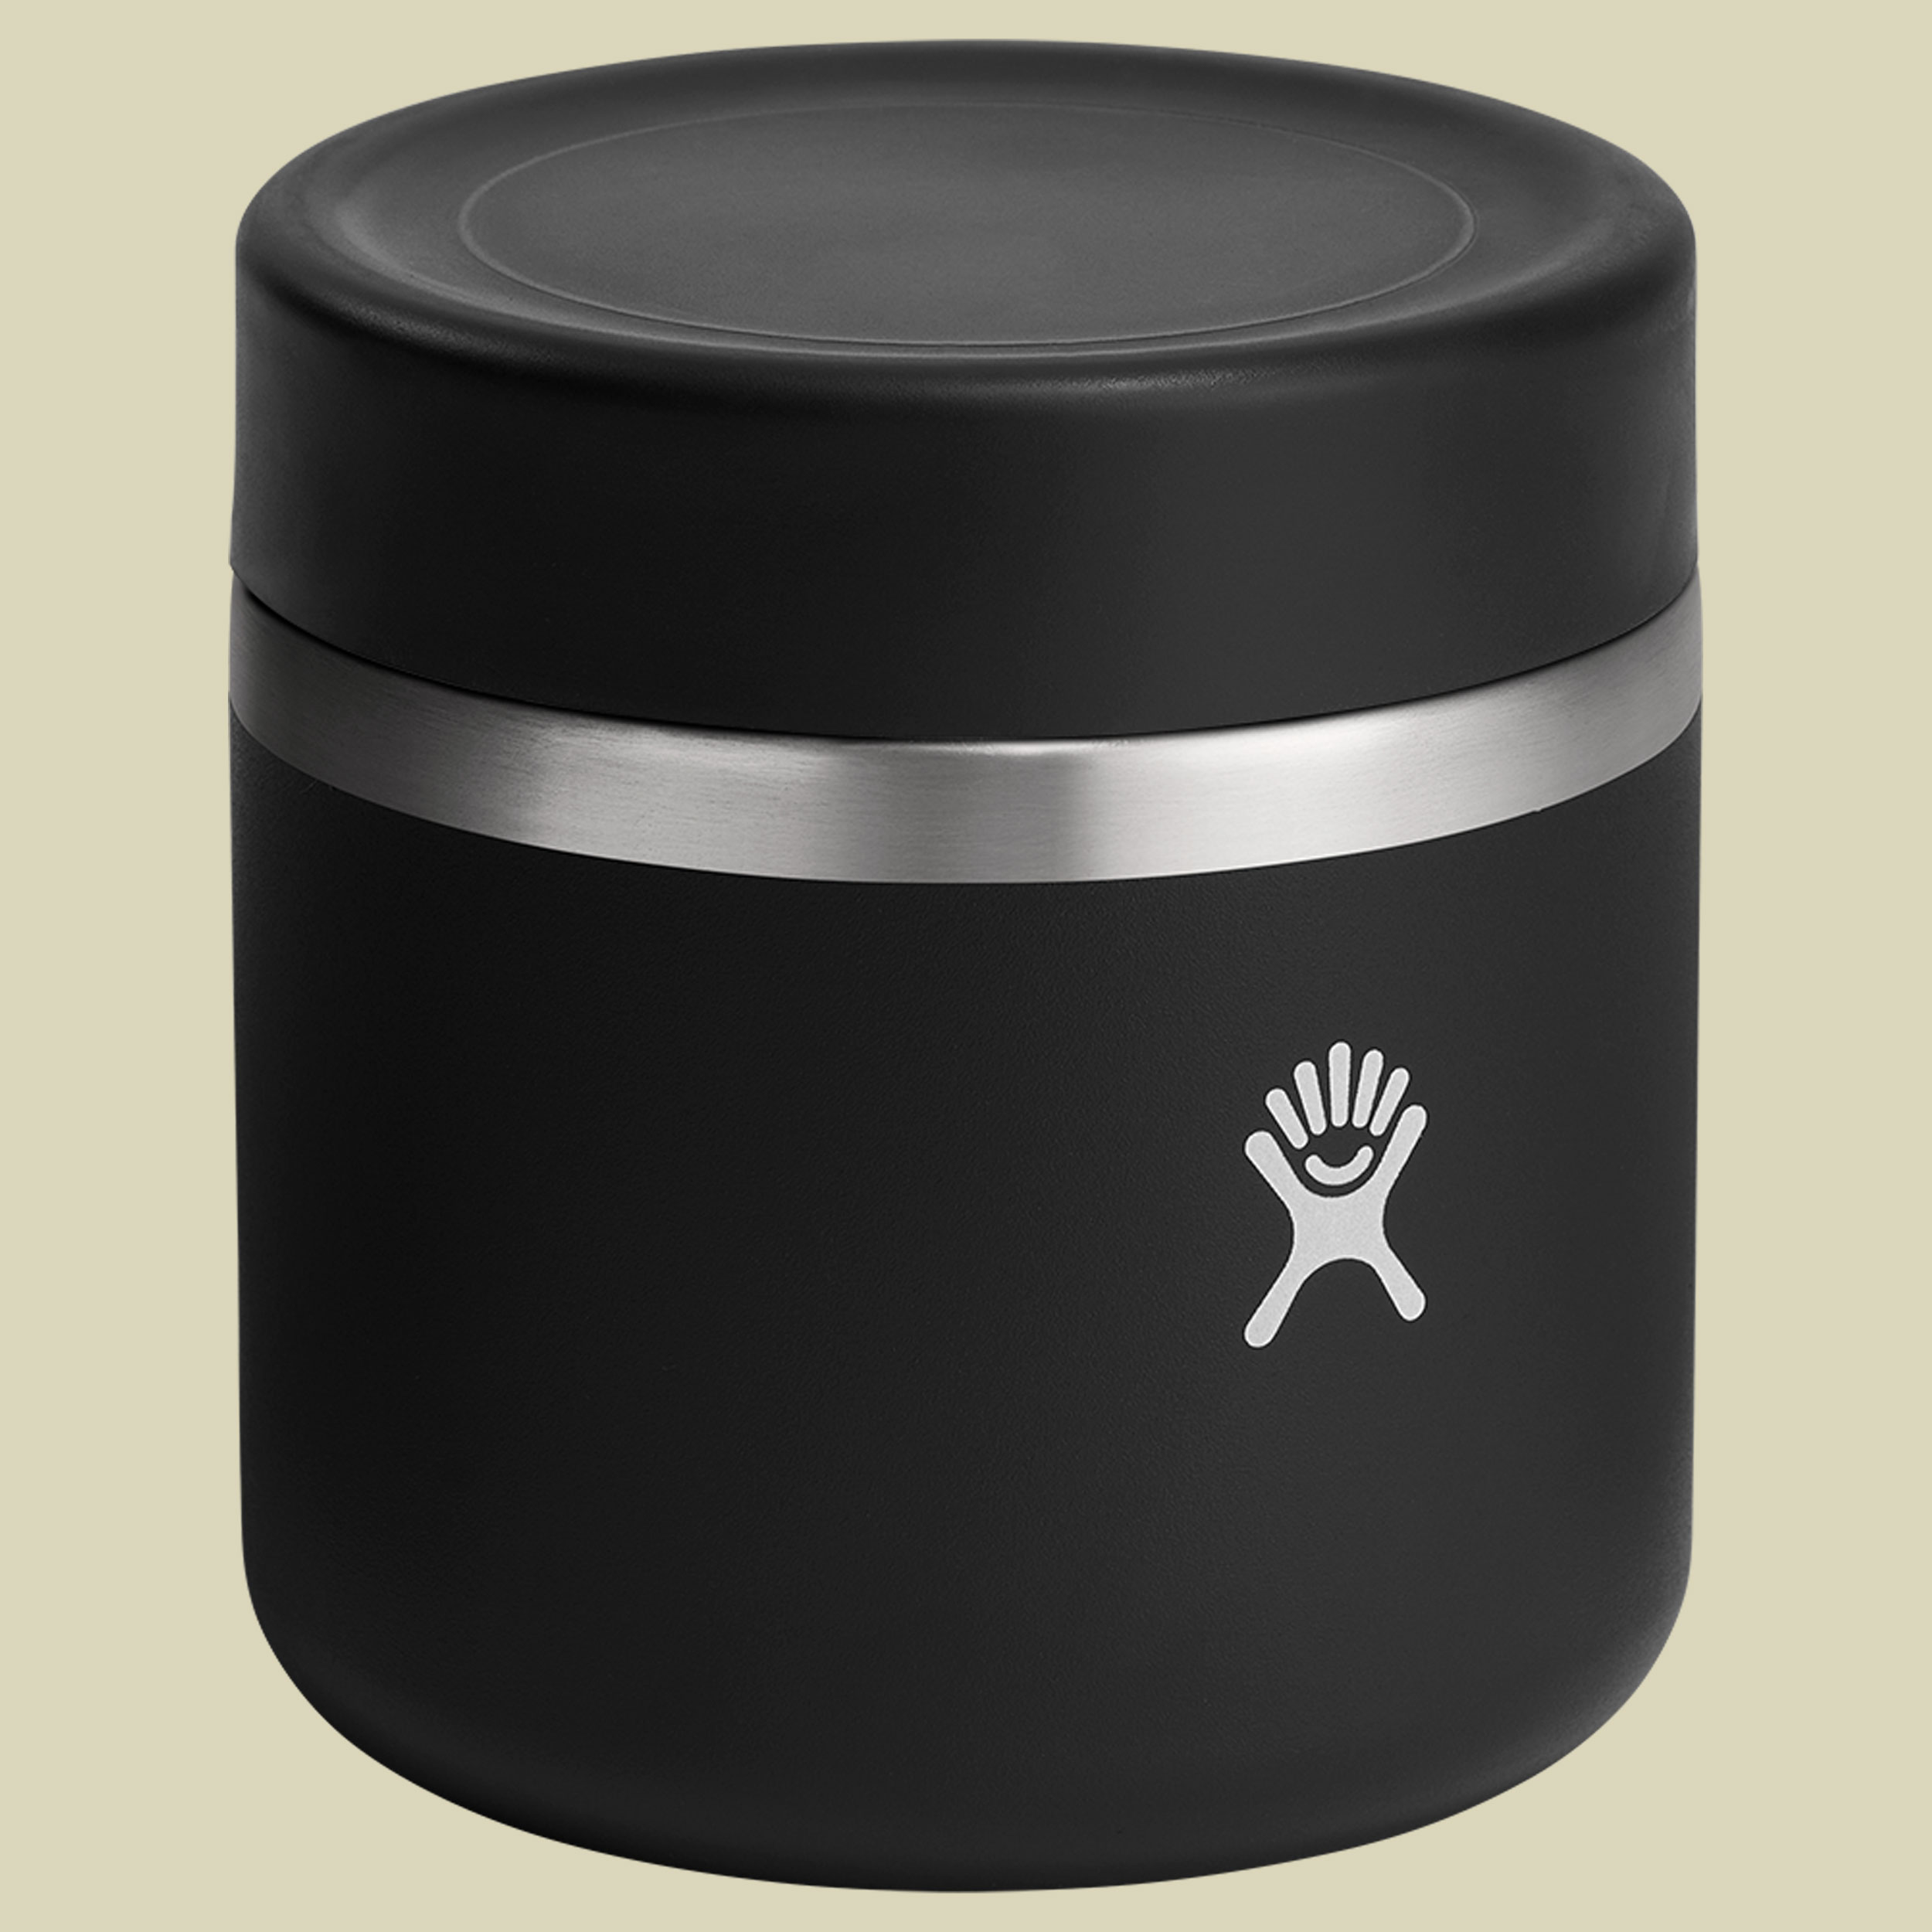 Hydro Flask 20 oz Insulated Food Jar schwarz 591 - Farbe black